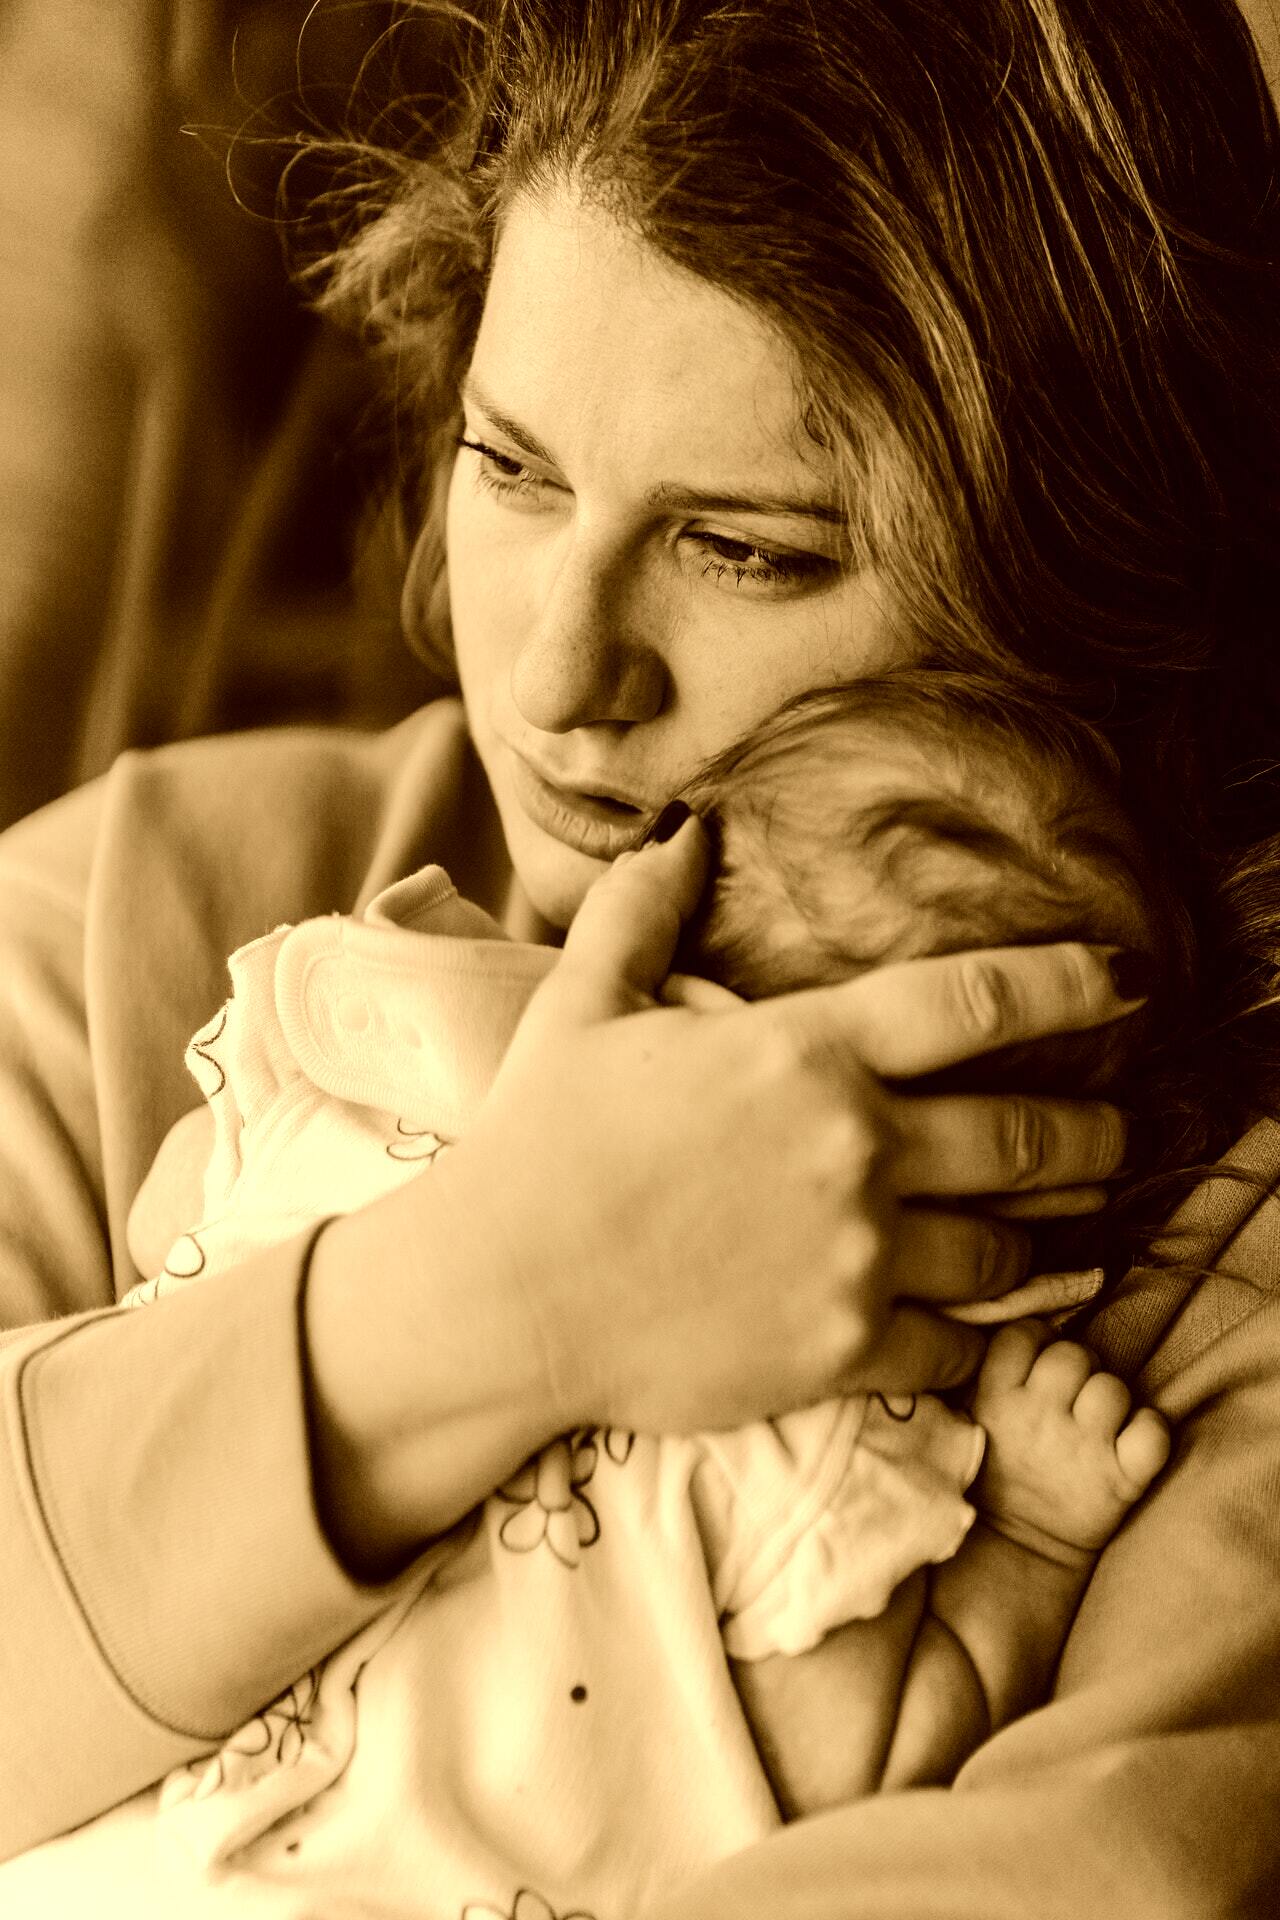 Emily war schwanger, allein und kämpfte mit ihrer psychischen Gesundheit. | Quelle: Pexels